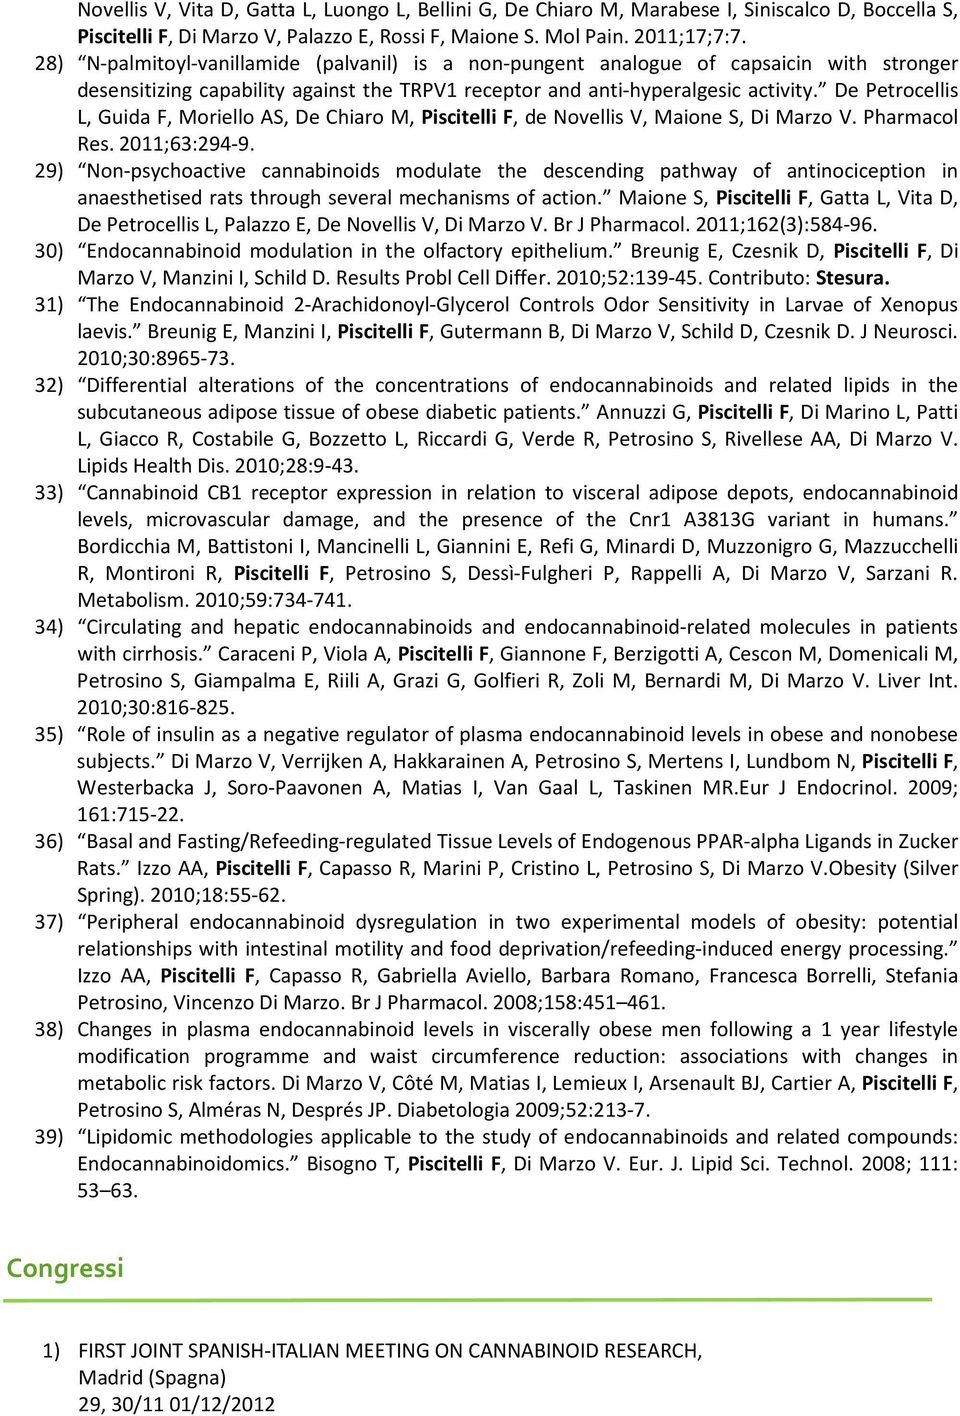 De Petrocellis L, Guida F, Moriello AS, De Chiaro M, Piscitelli F, de Novellis V, Maione S, Di Marzo V. Pharmacol Res. 2011;63:294-9.